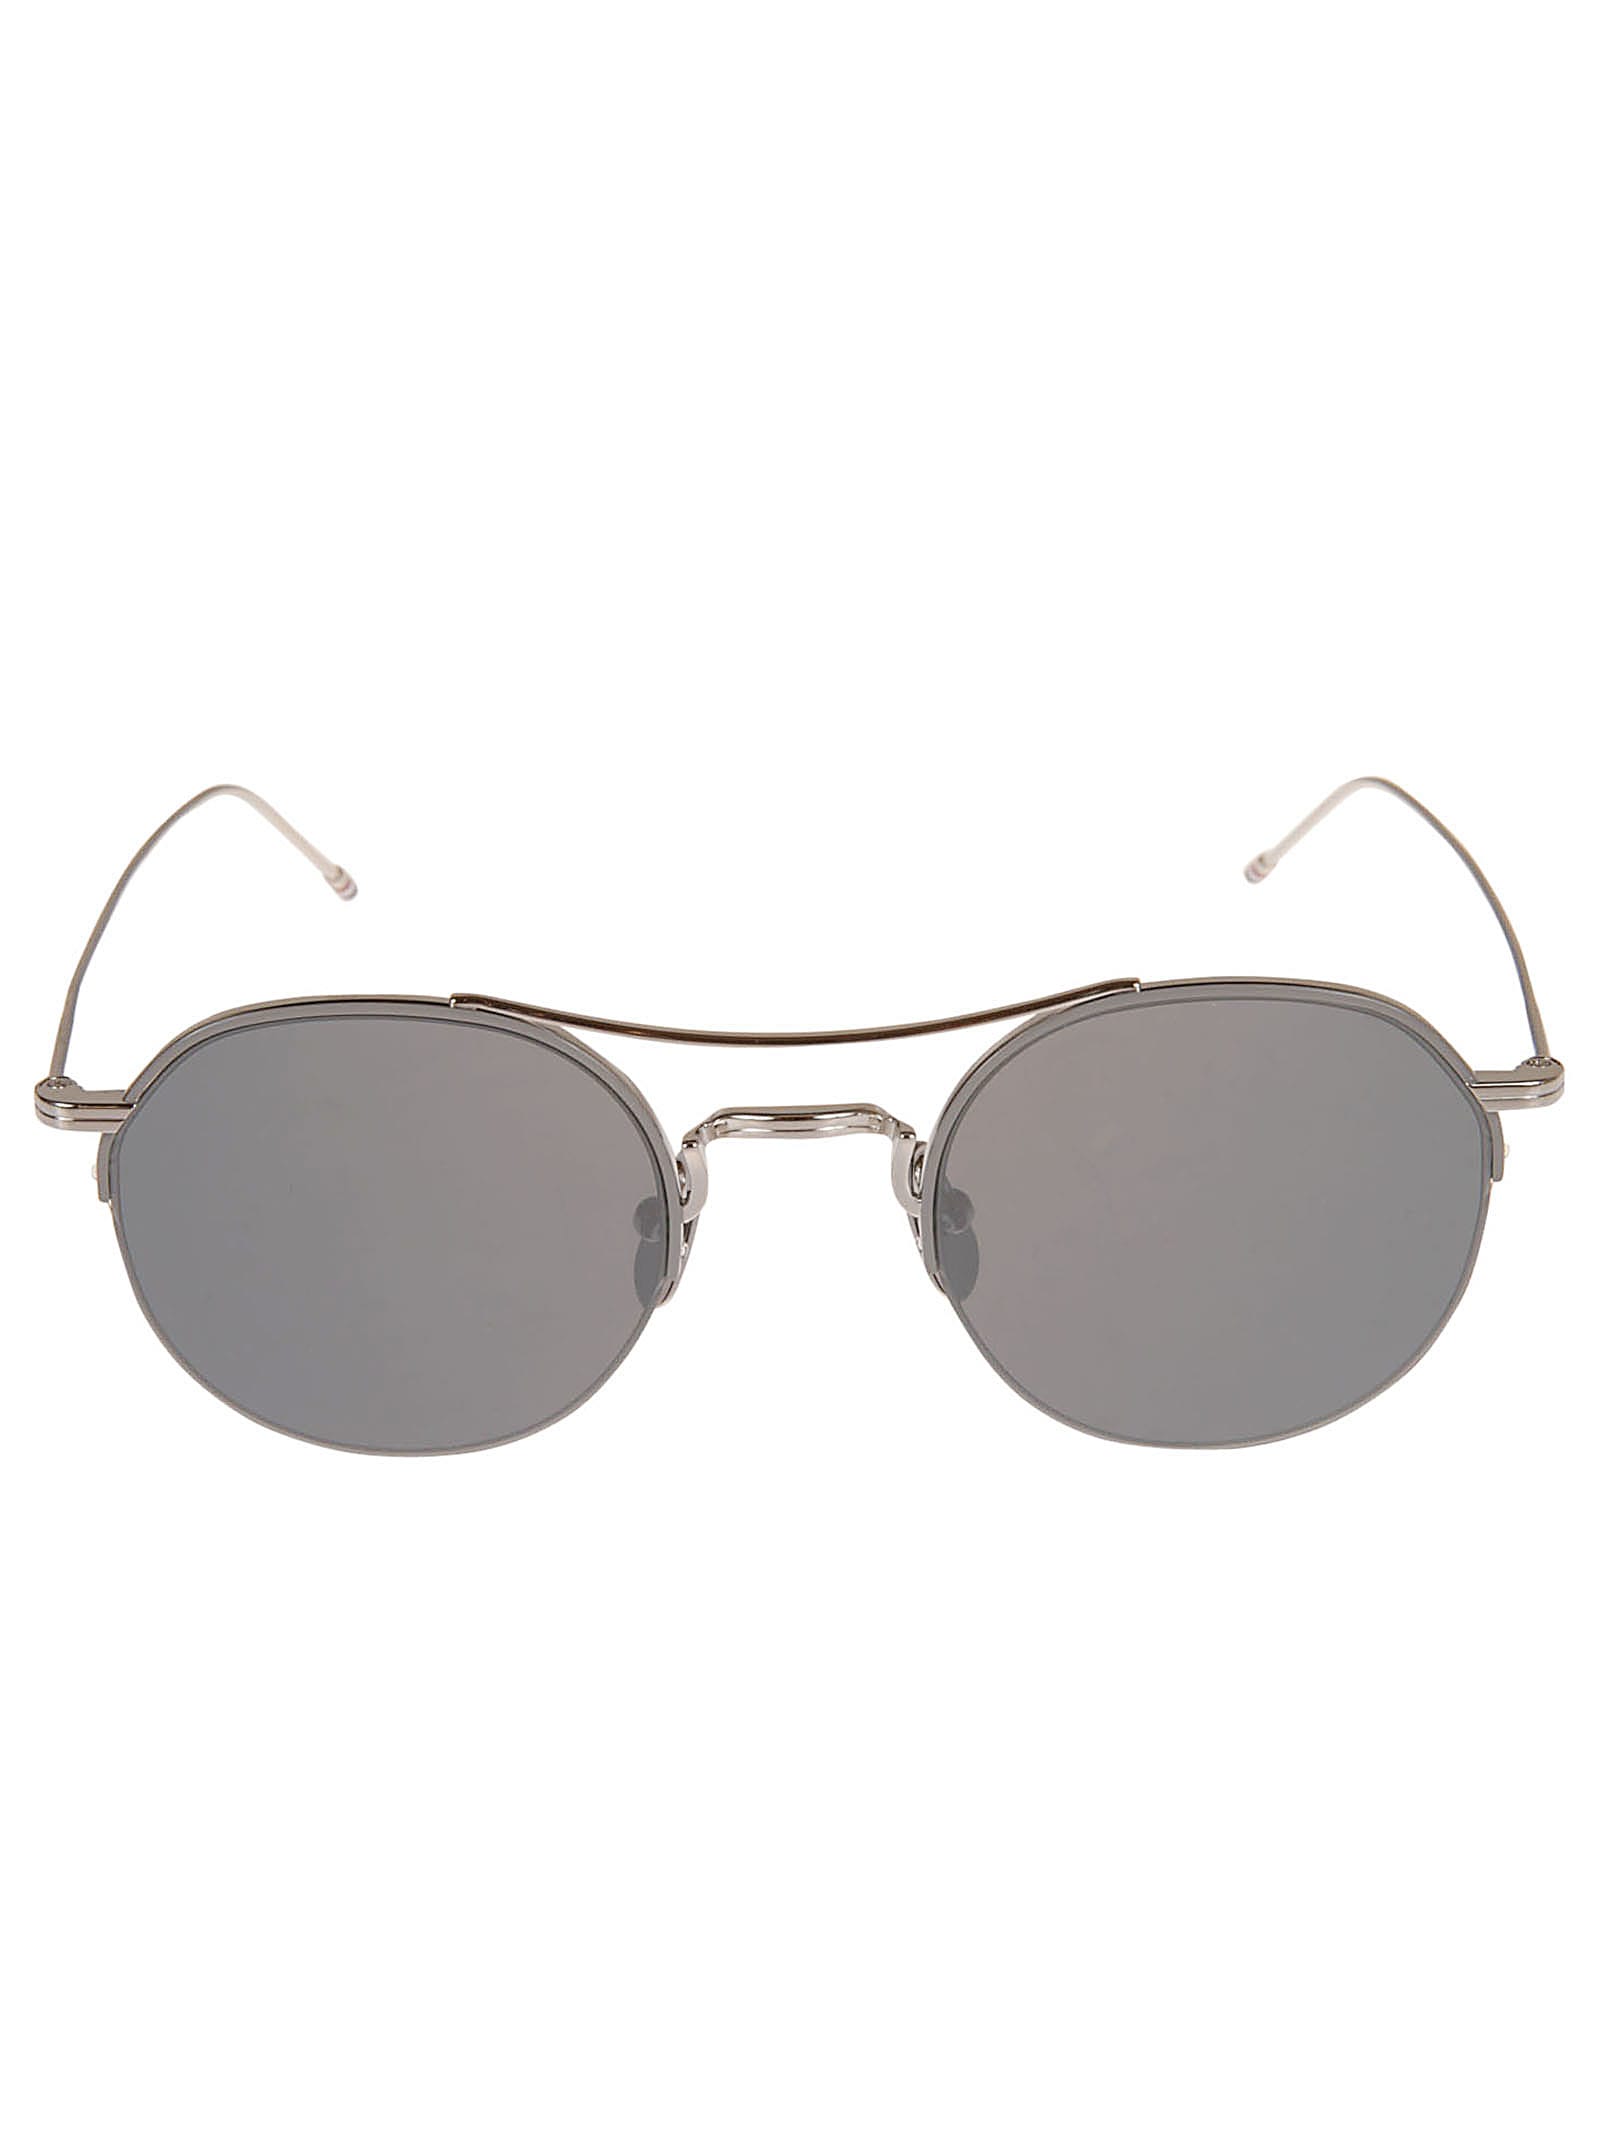 Round Frame W/ Top Bar Sunglasses